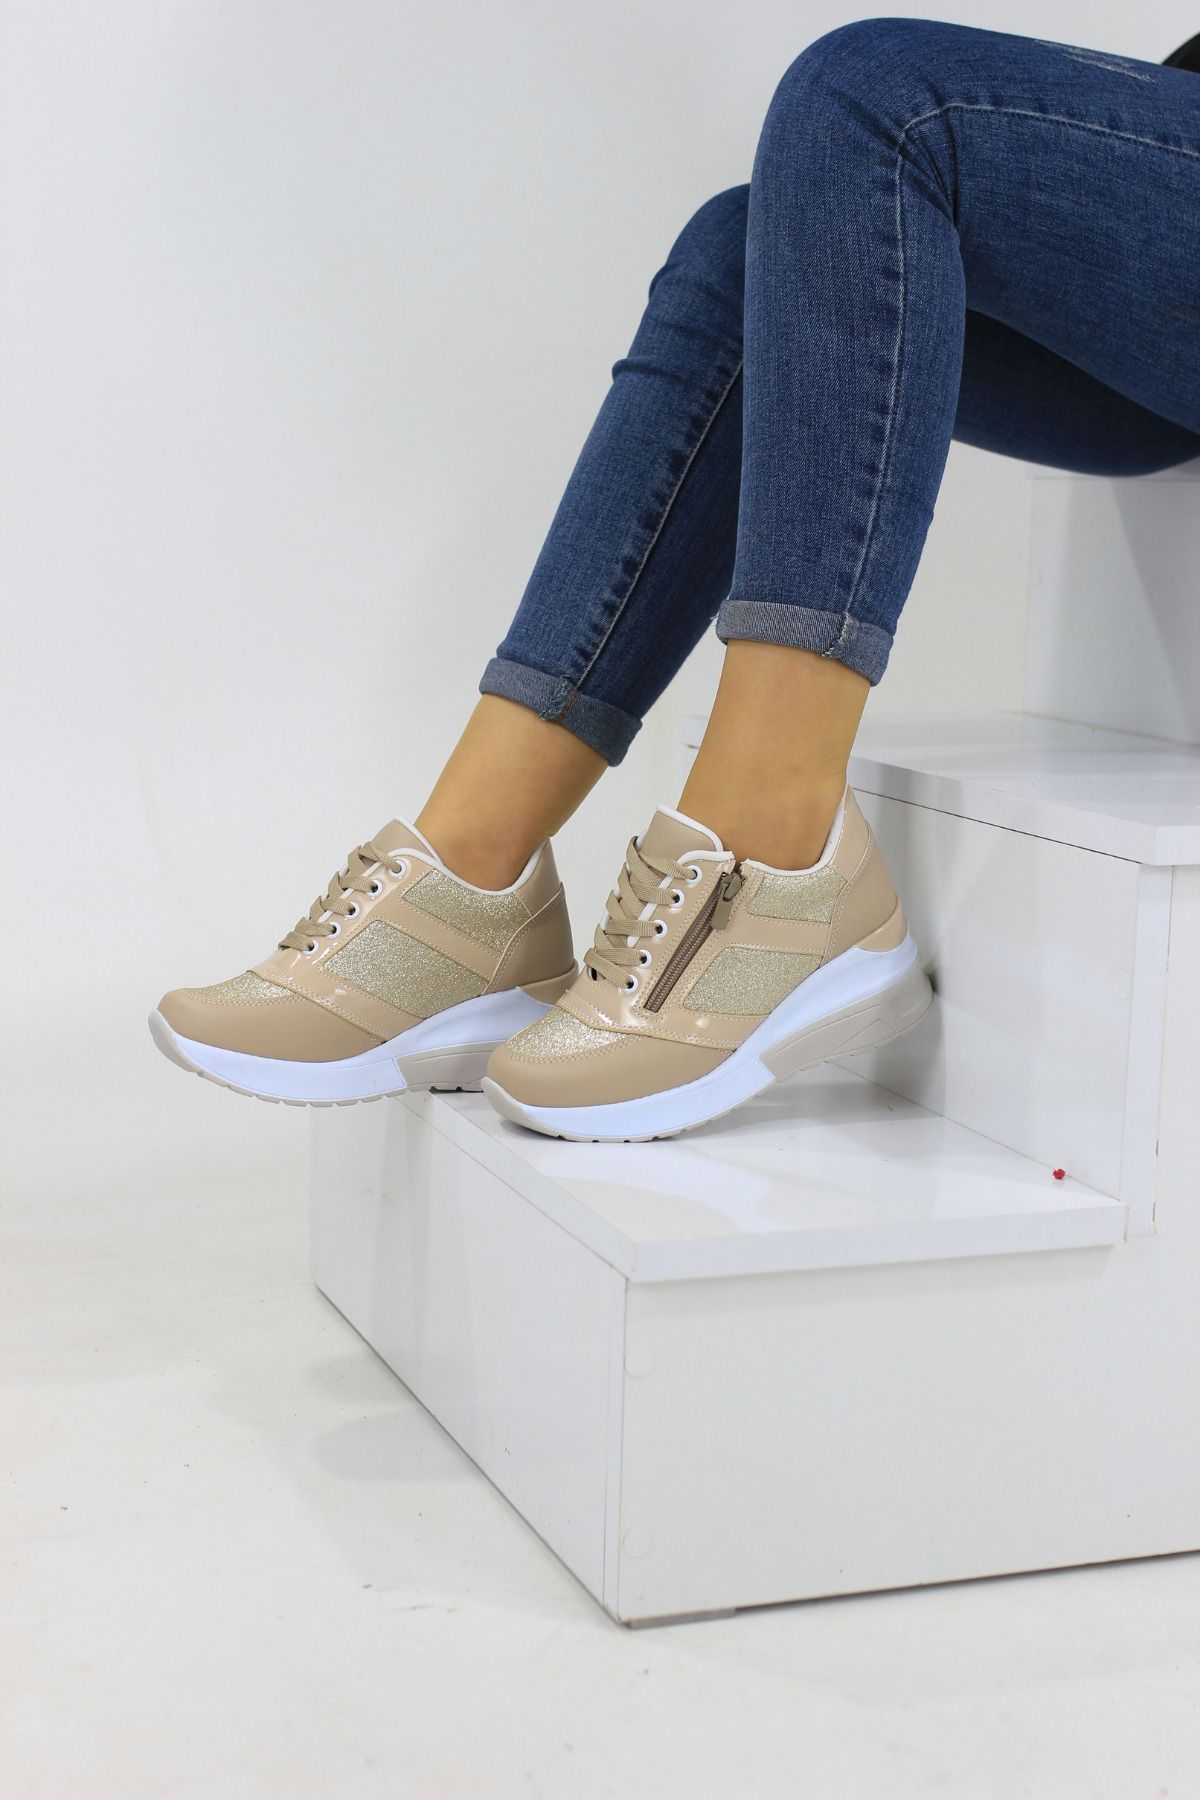 Aleza Shoes Yeni Sezon Dolgu Topuk Fermuarlı Simli Kadın Sneaker